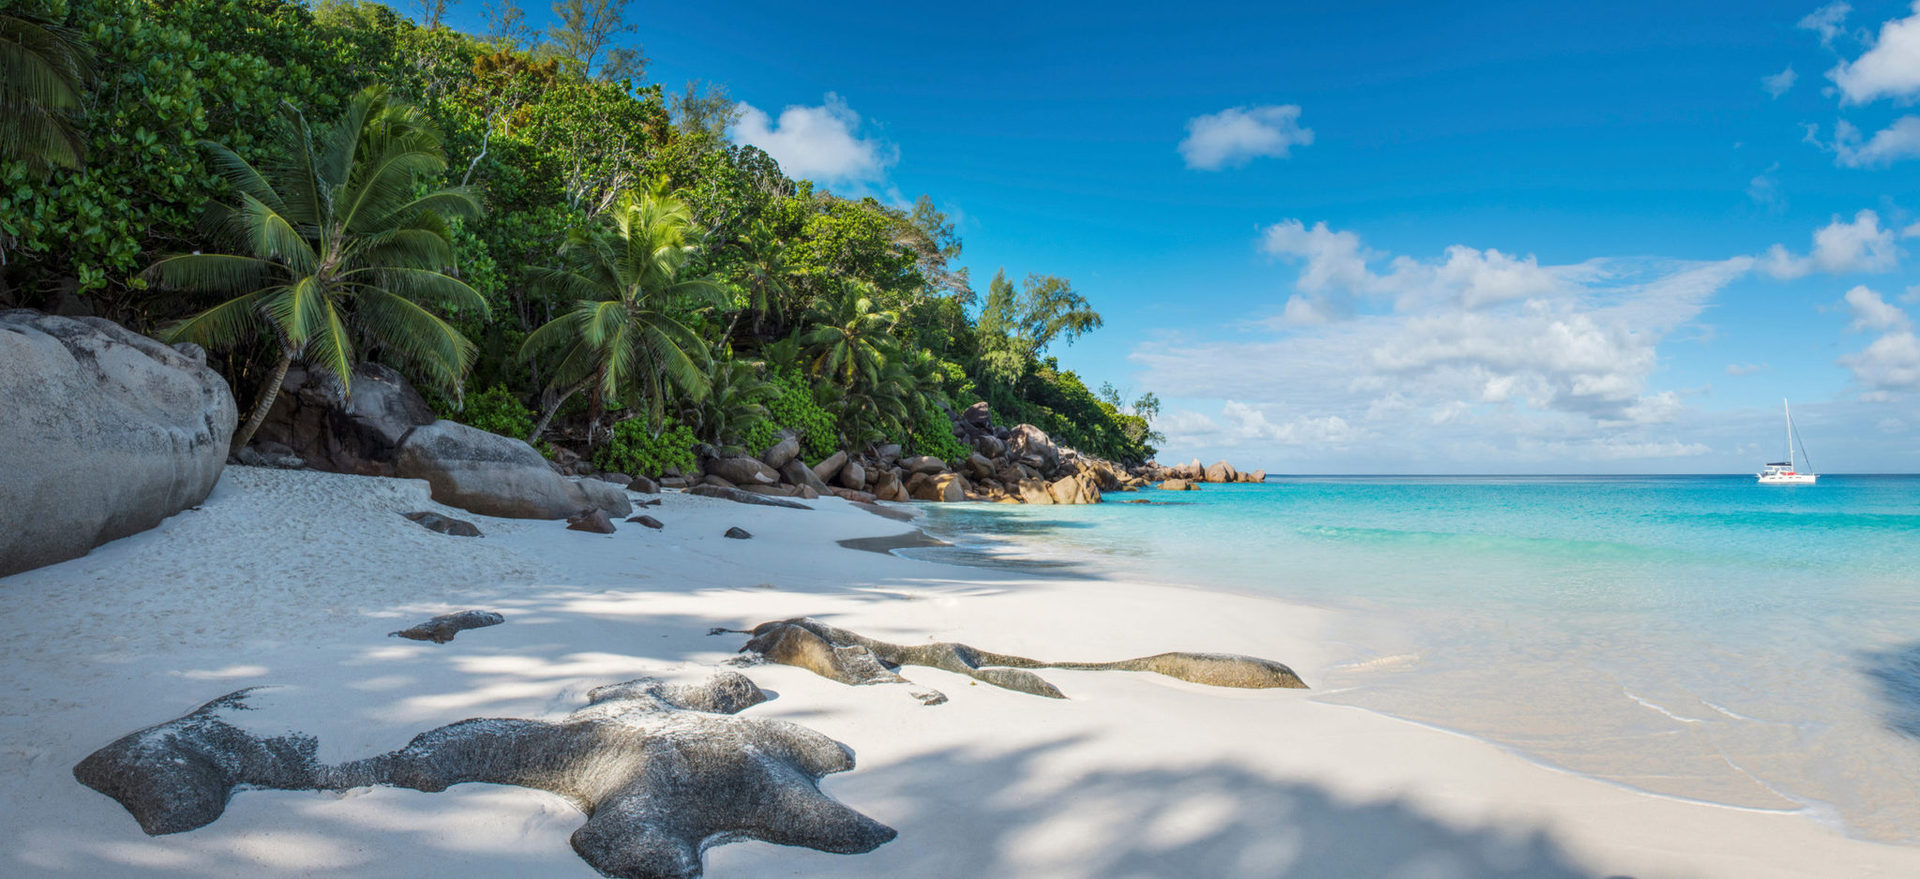 Для вашего отдыха - три замечательных пляжа с белым песком, живописными холмами, пышной зеленью и экзотическими растениями.